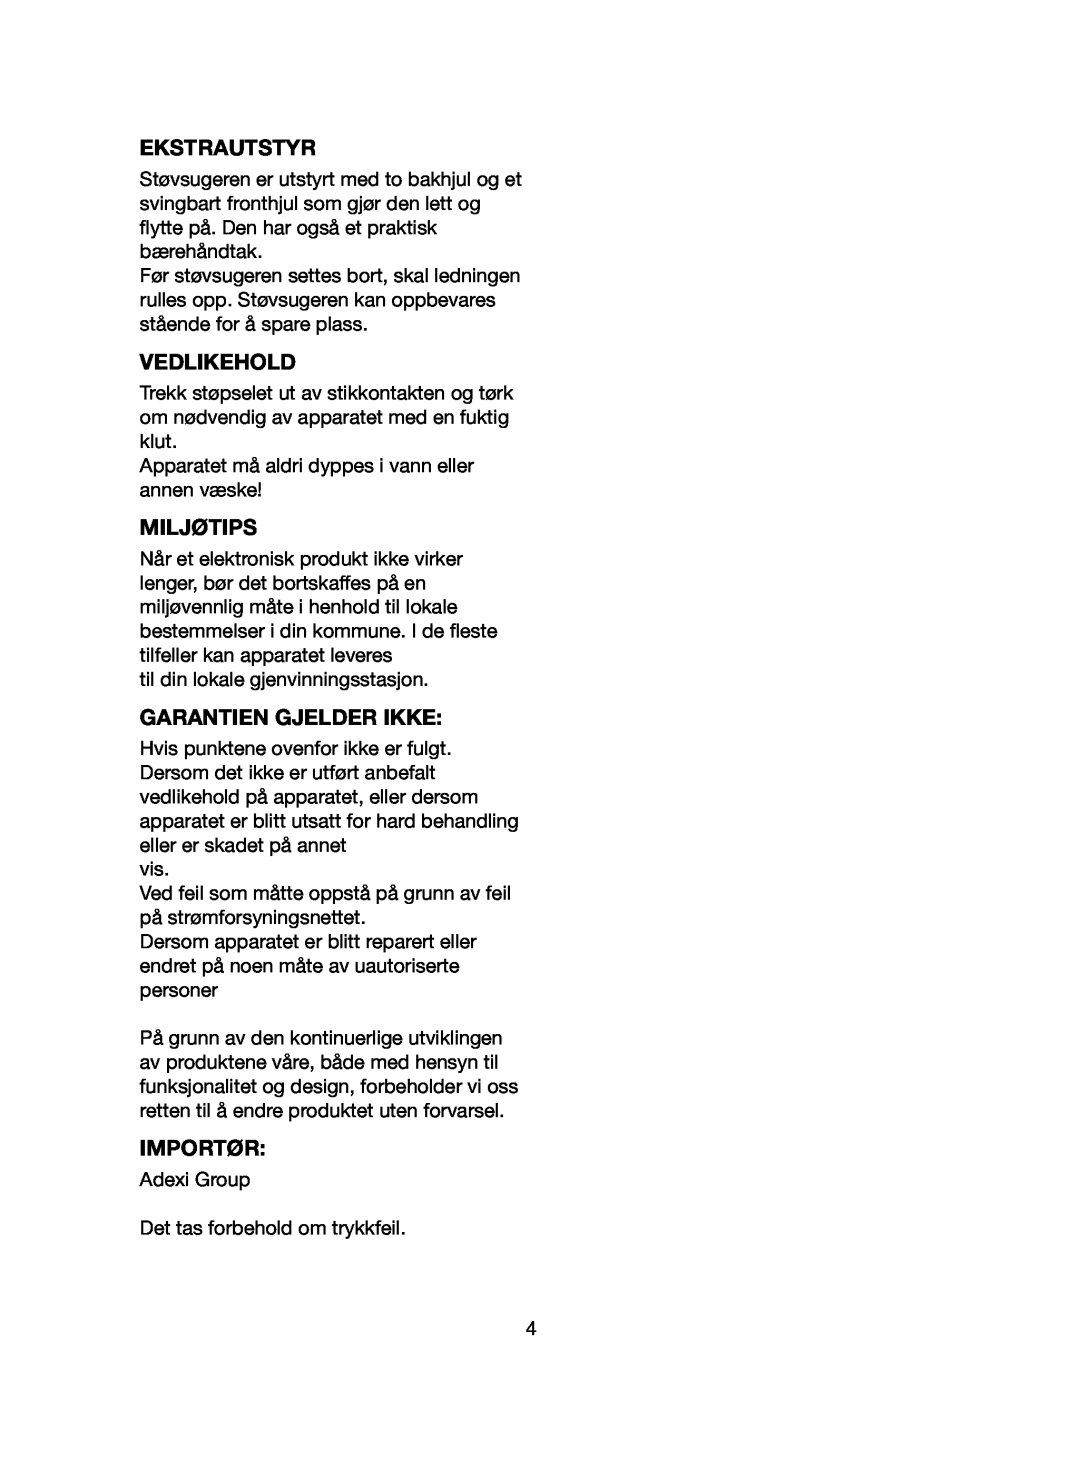 Melissa 640-107 manual Ekstrautstyr, Vedlikehold, Miljøtips, Garantien Gjelder Ikke, Importør 